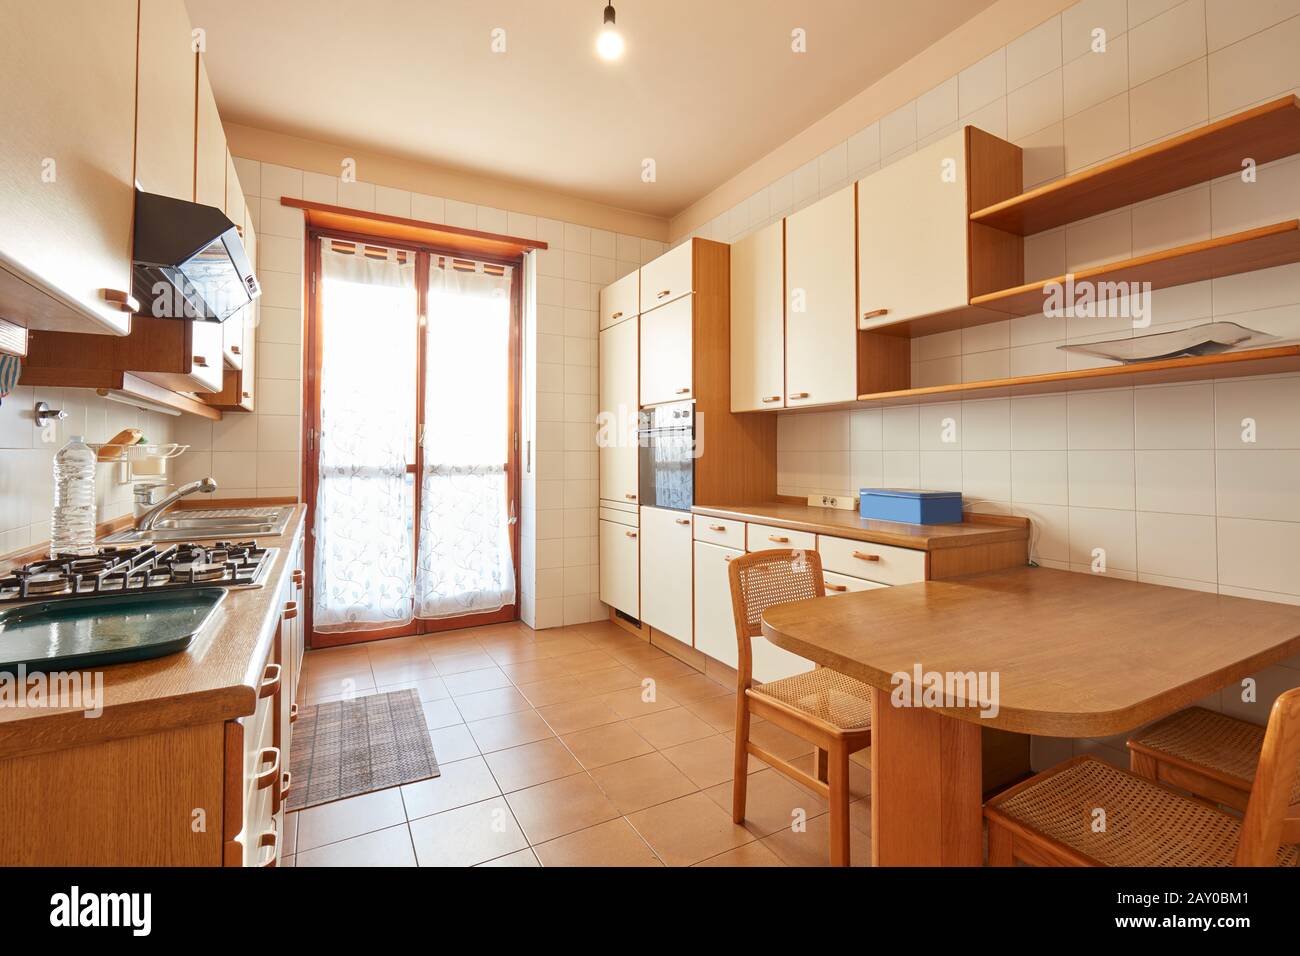 Kücheneinrichtung mit Holztisch an einem sonnigen Tag in normaler Wohnung Stockfoto